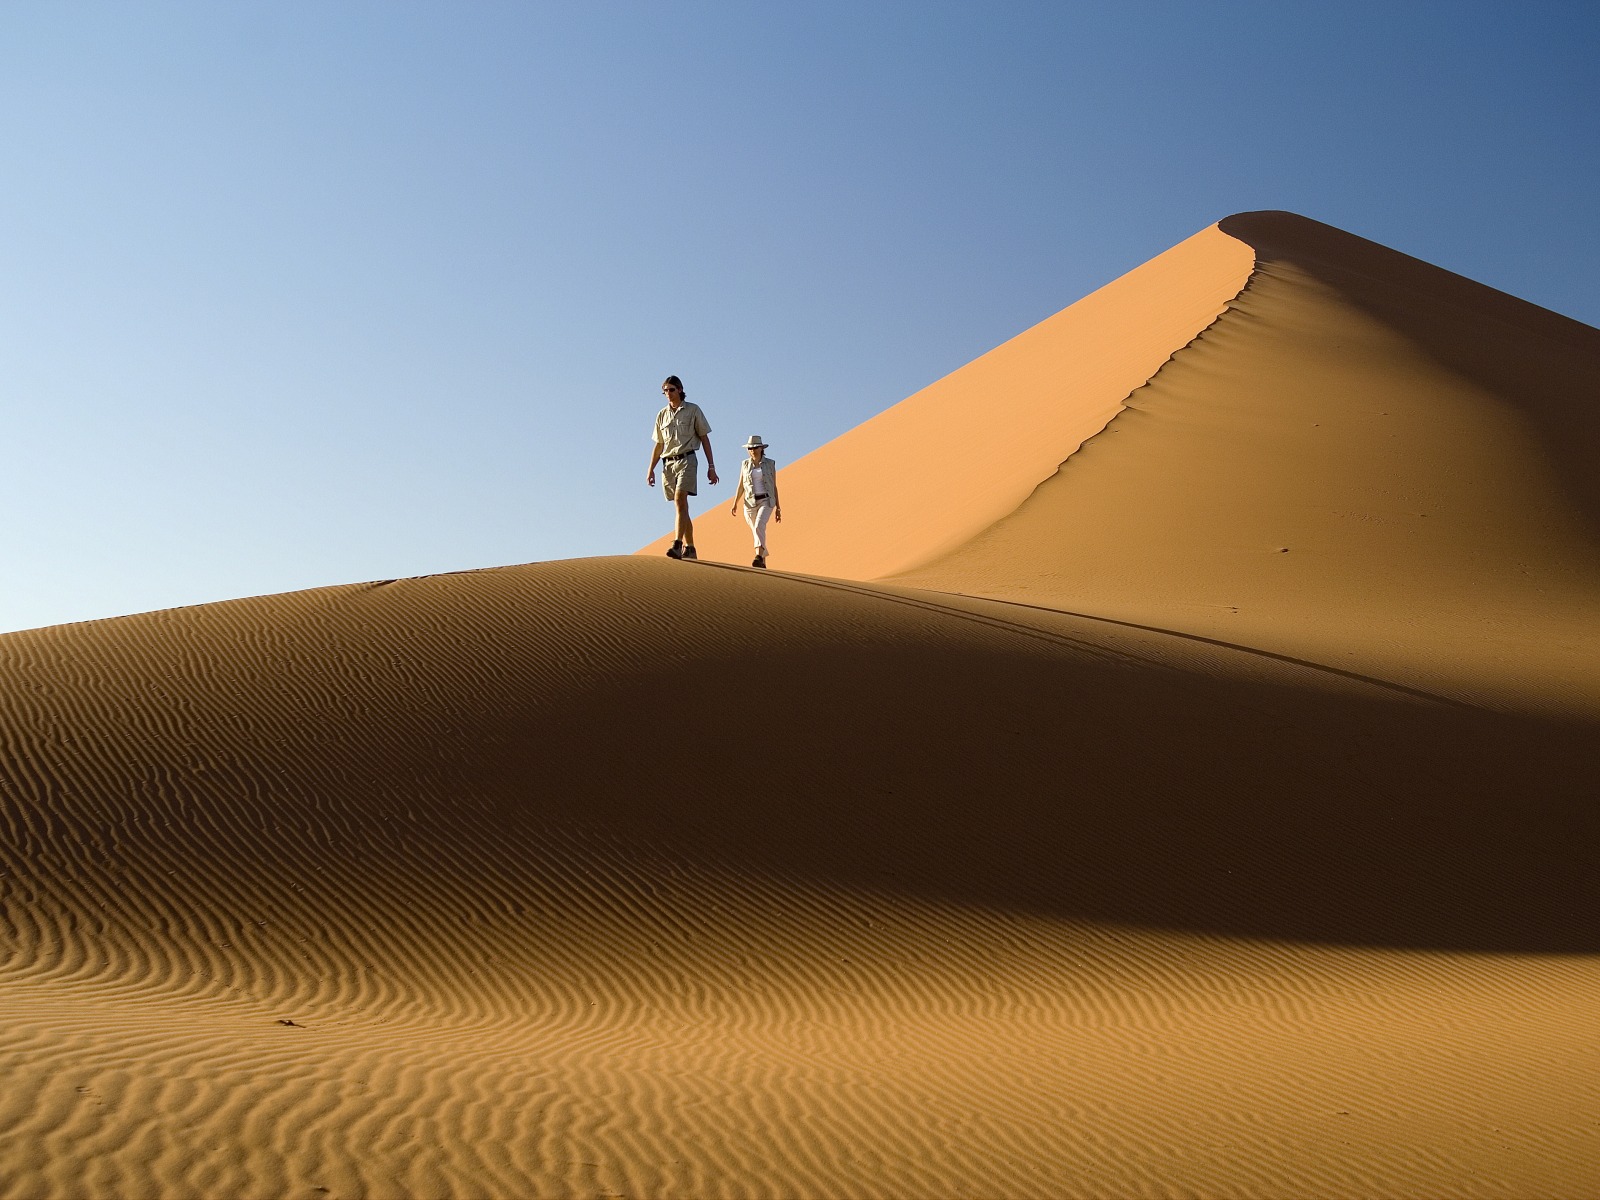 Exploring the dunes - Desert Homestead Outpost